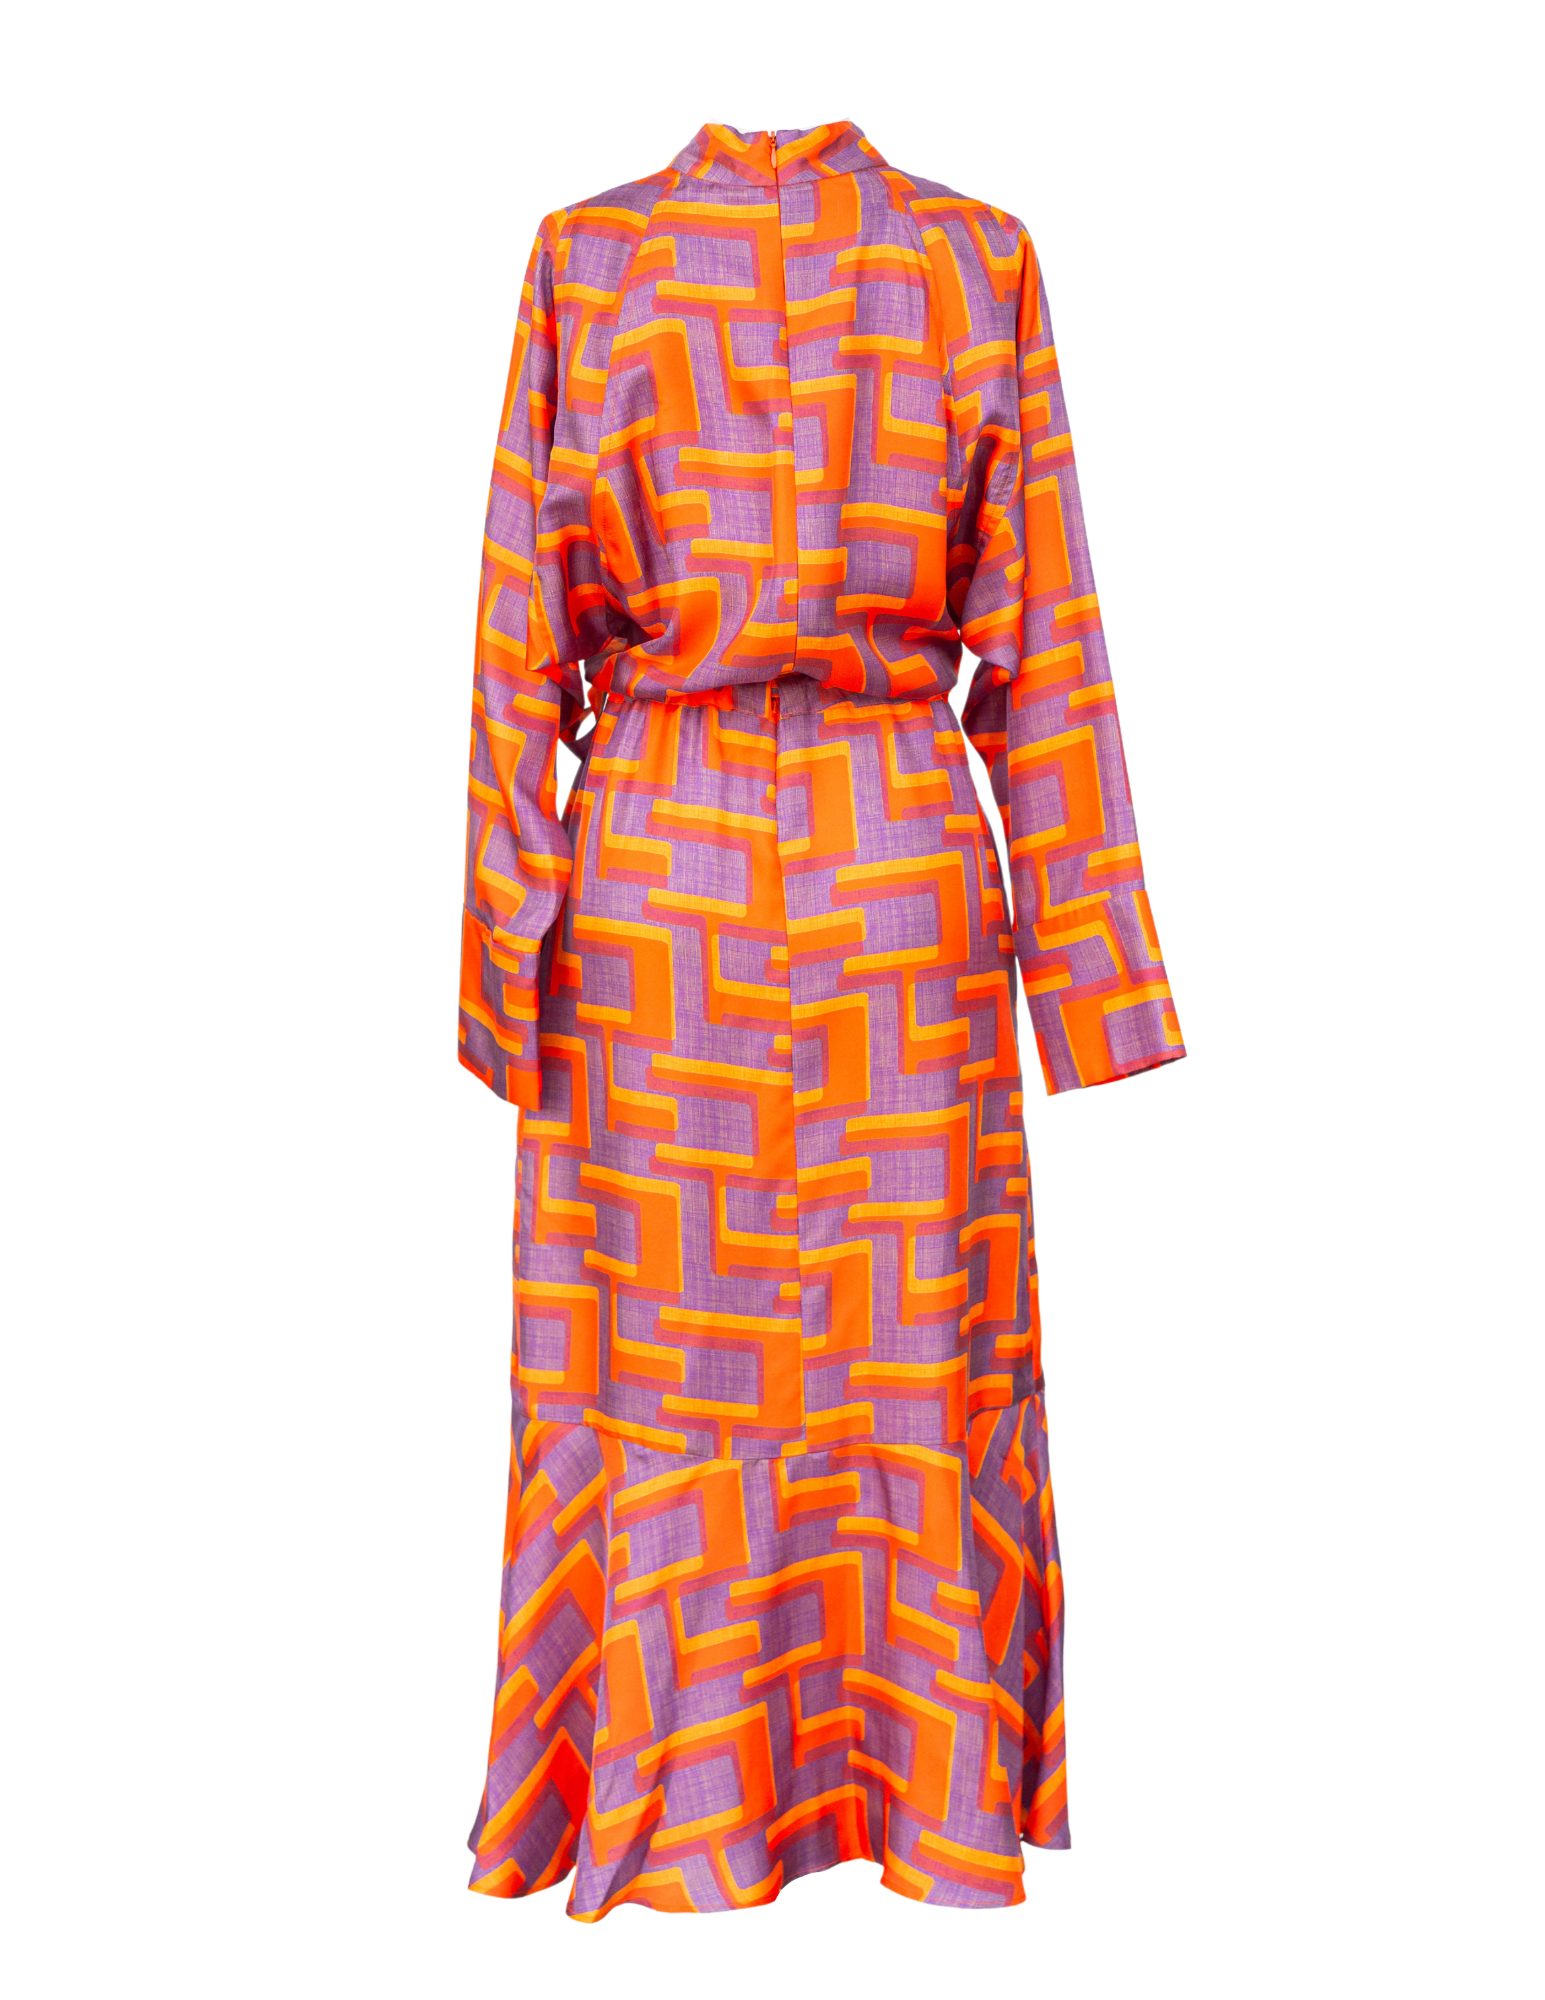 Pop Art Maze Dress - Glowing Orange